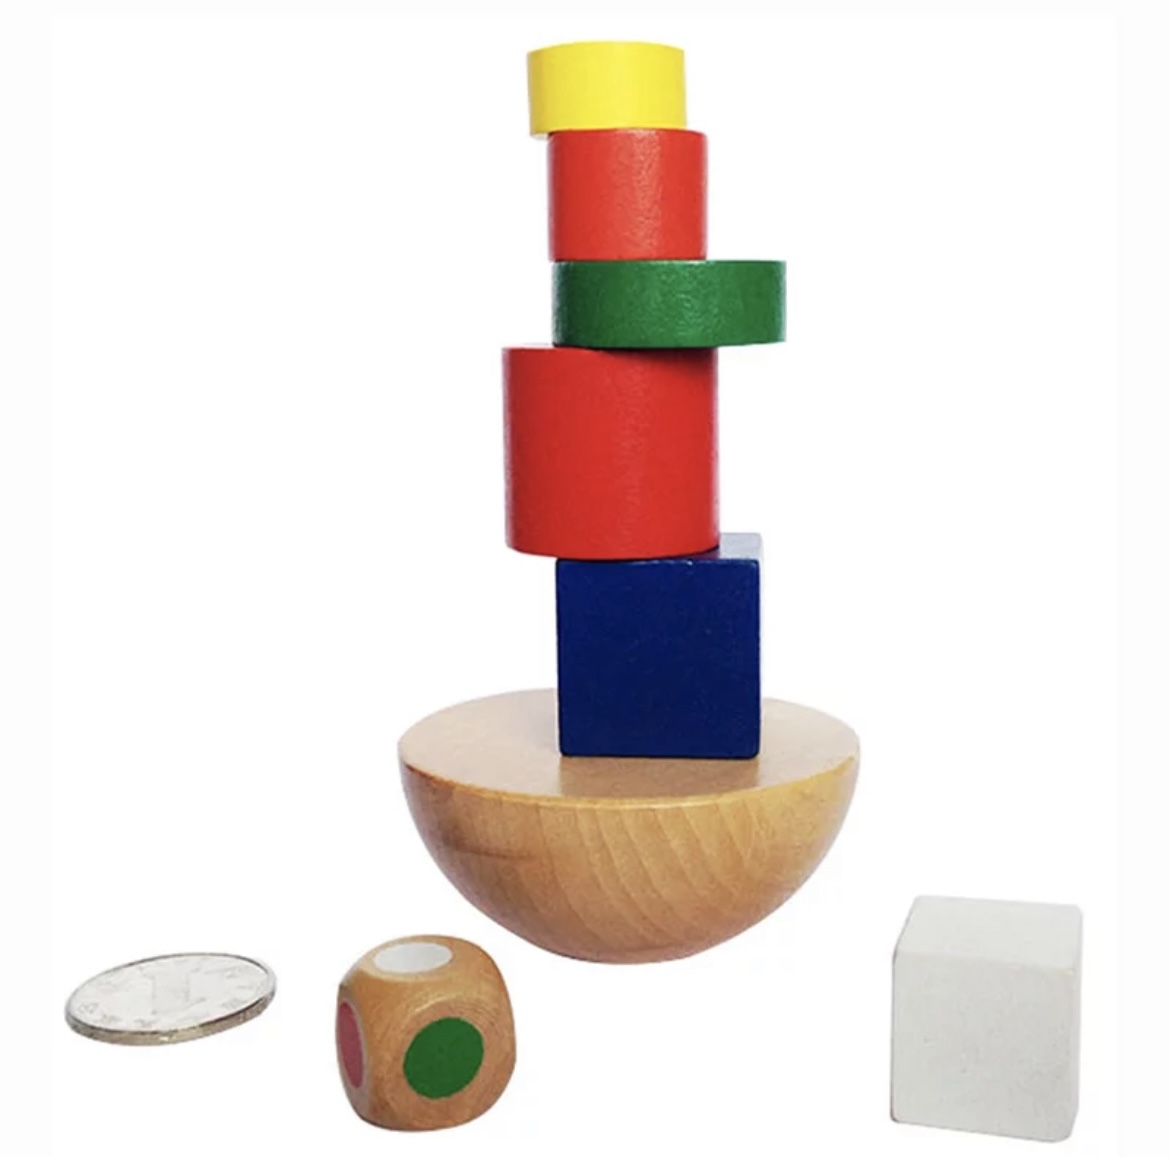 Woodinc - Juego Torre de Equilibrio de Madera para Niños tamaño